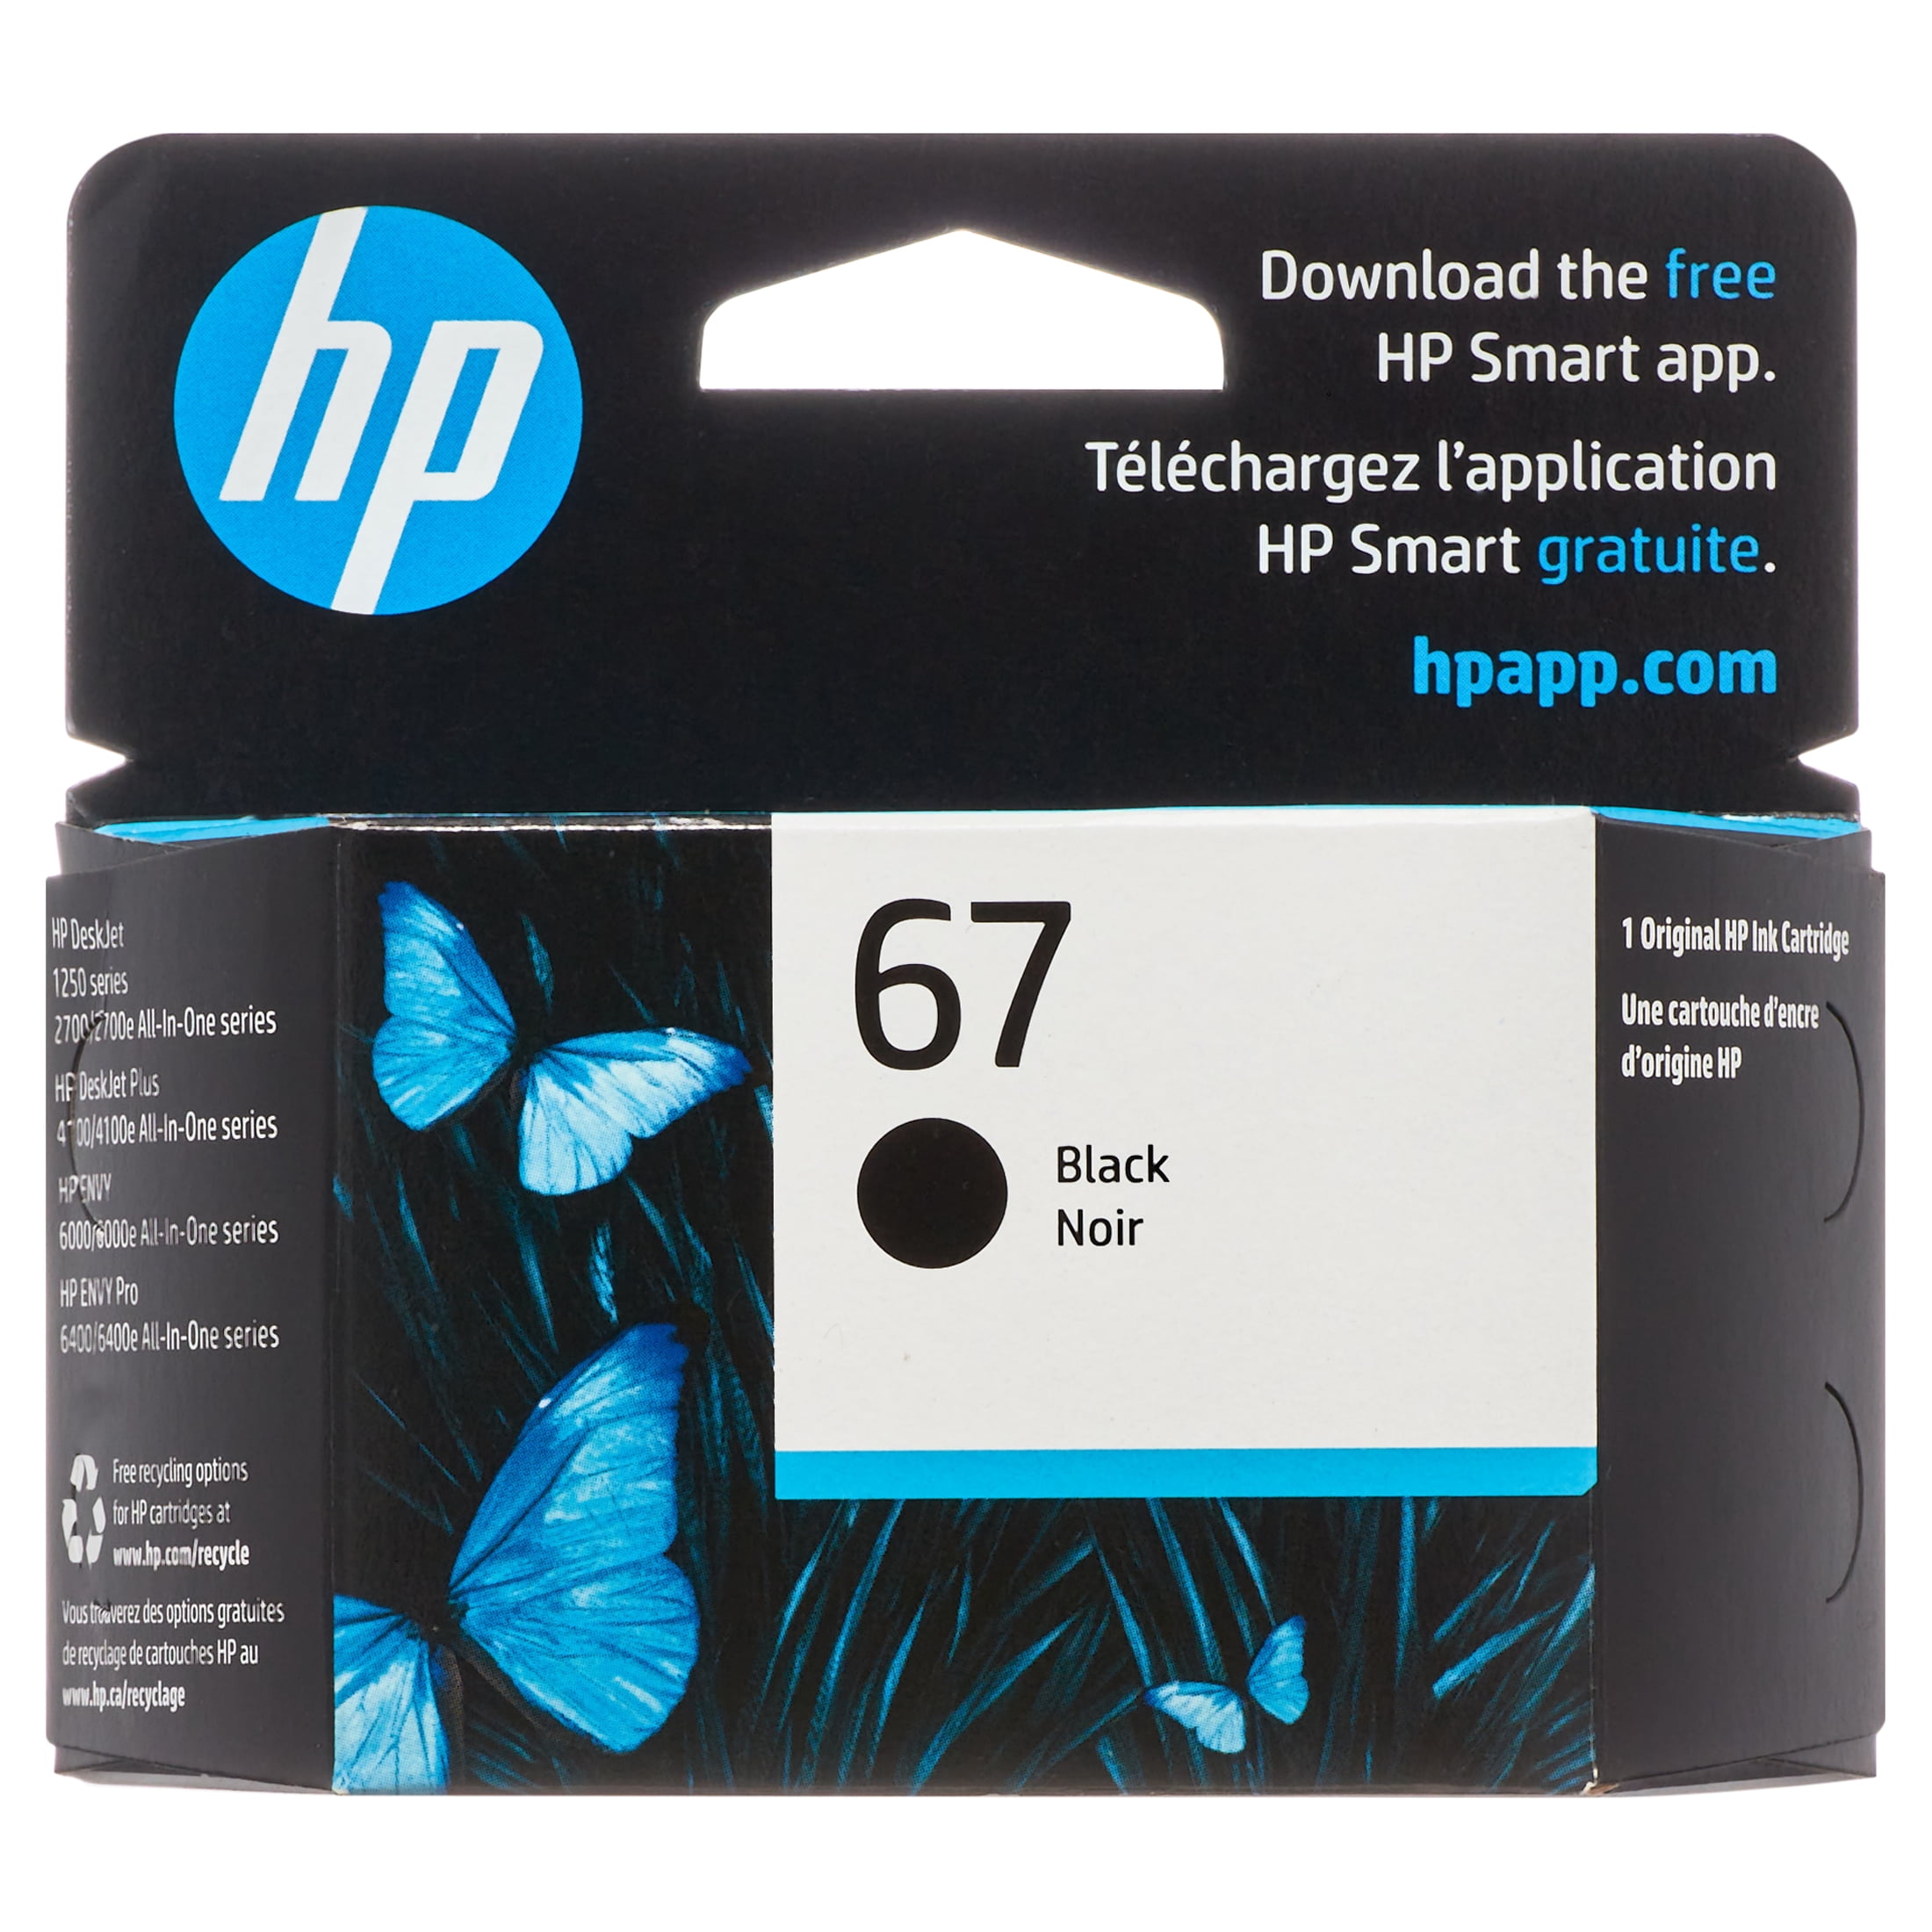 HP 305 cartouche d'encre noire conçue par